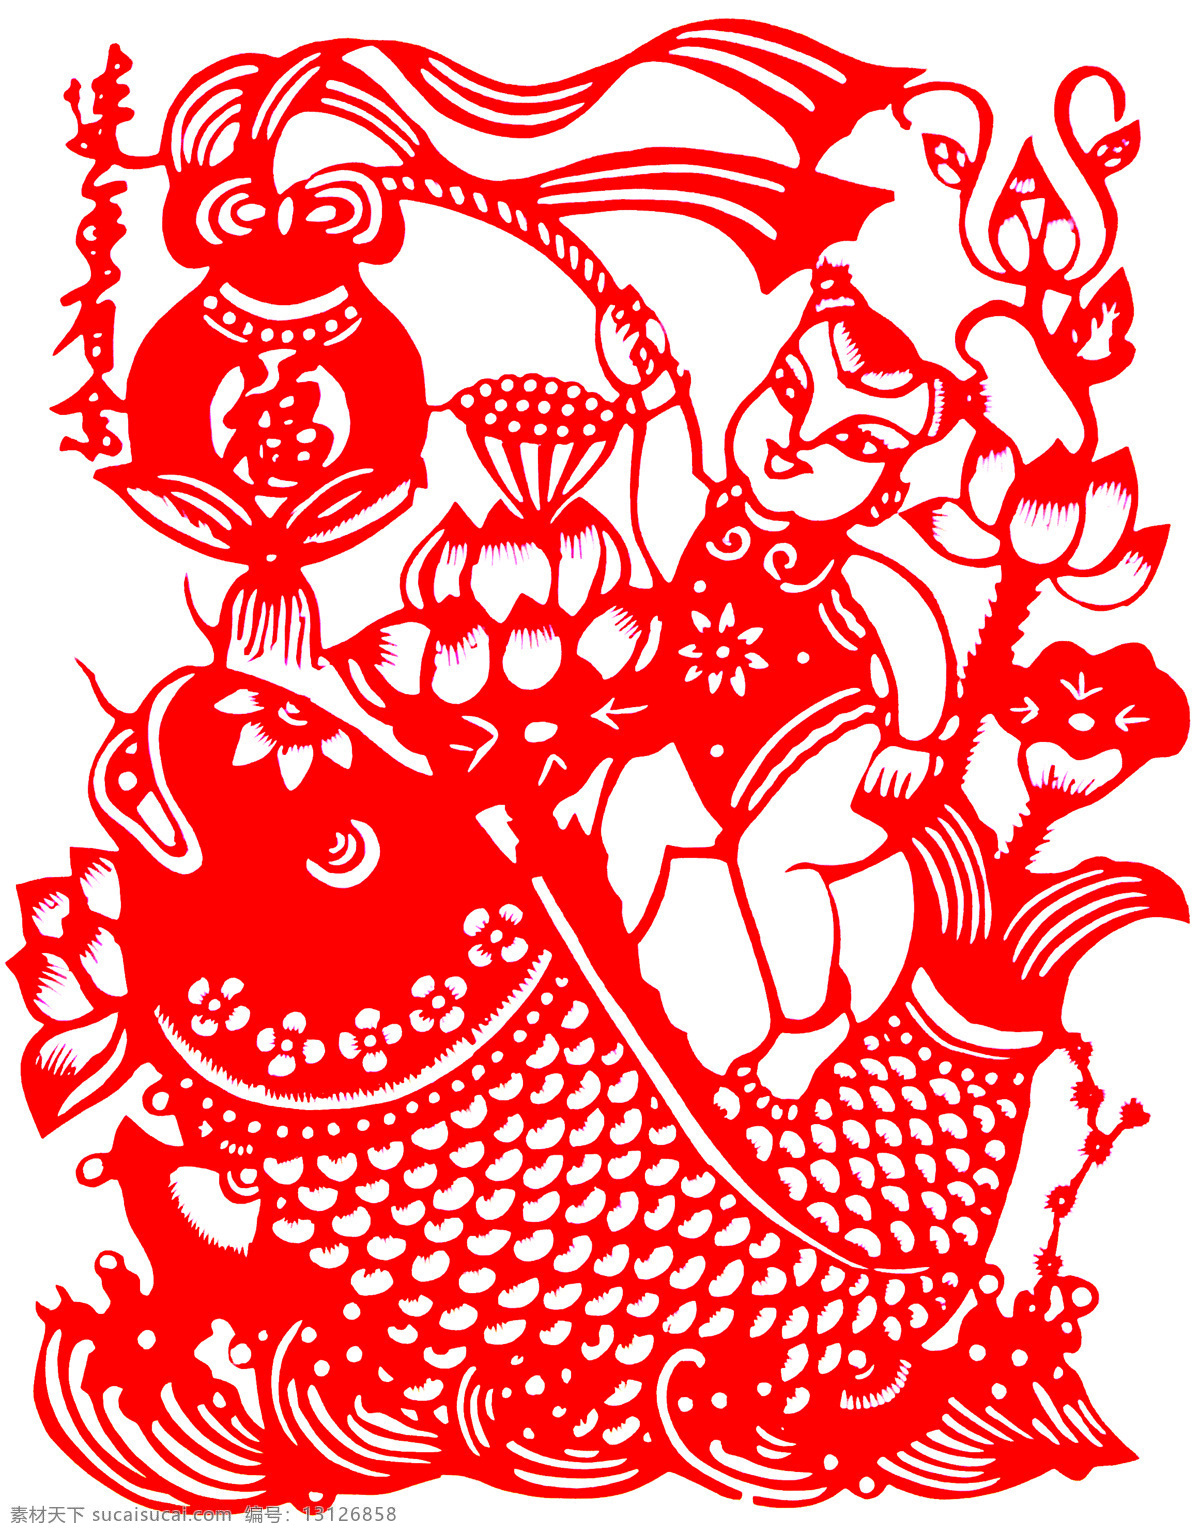 连年 有余 剪纸 连年有余 中国 风 古典 花纹 传统 图案 剪纸艺术 民间剪纸艺术 民间画 文化艺术